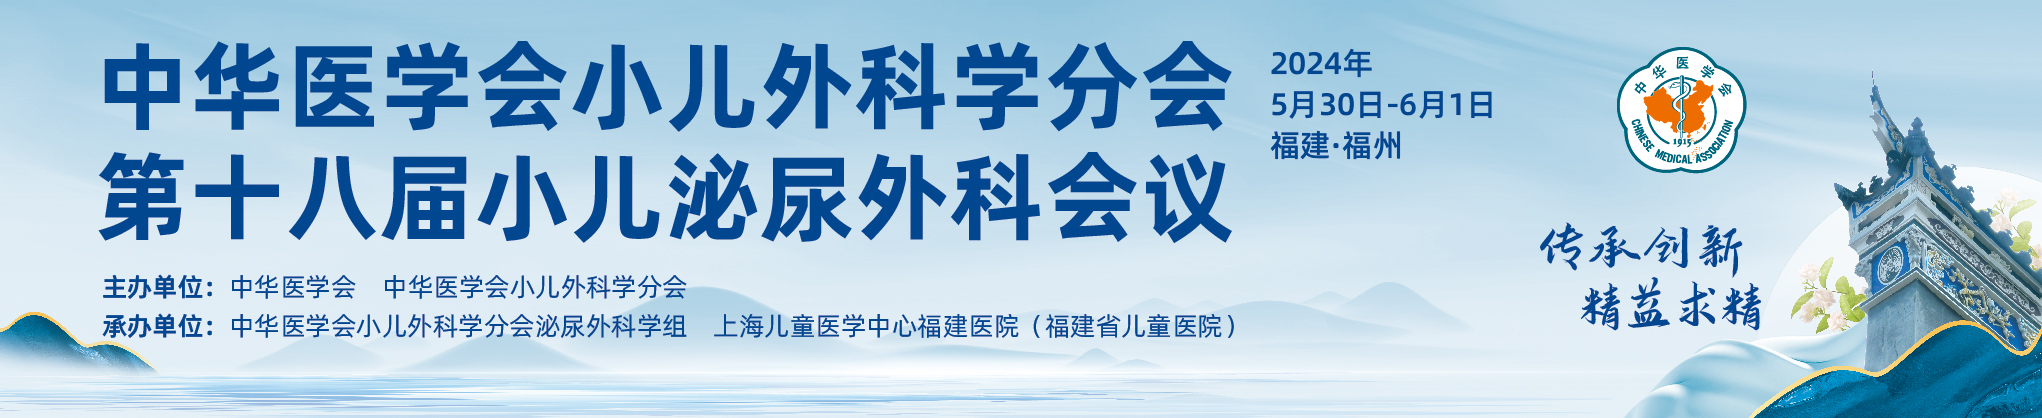 中华医学会小儿外科学分会第十八届小儿泌尿外科会议